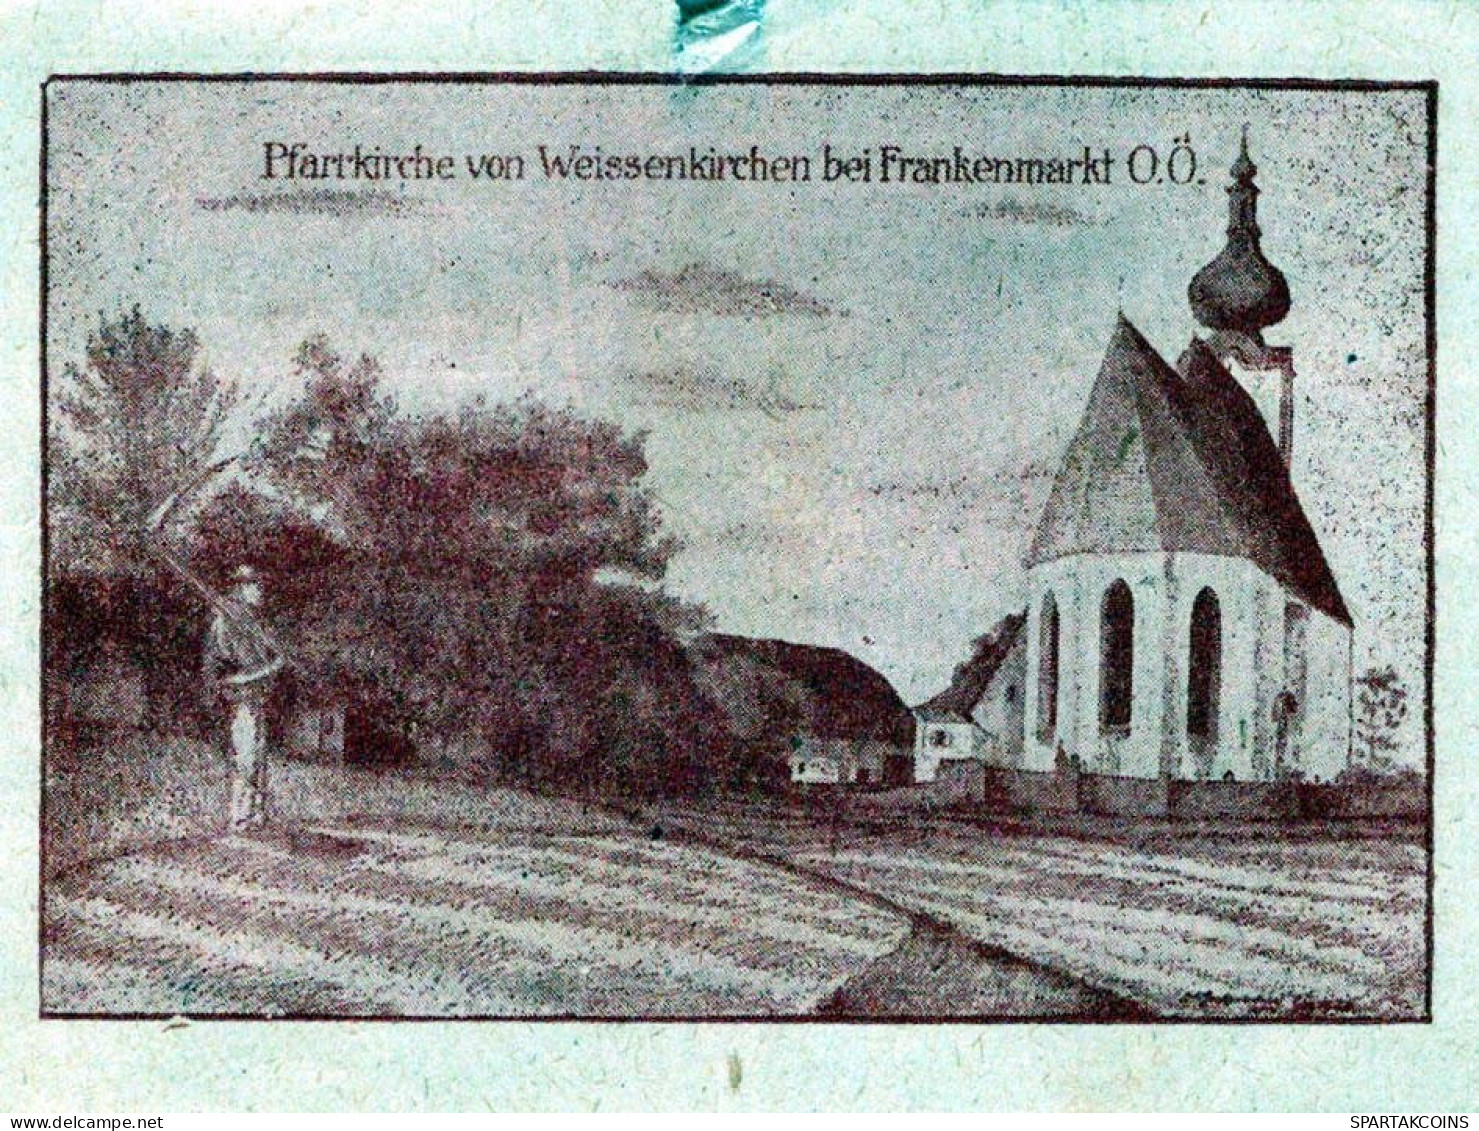 20 HELLER 1920 WEISSENKIRCHEN BEI FRANKENMARKT Oberösterreich Österreich #PI394 - [11] Lokale Uitgaven